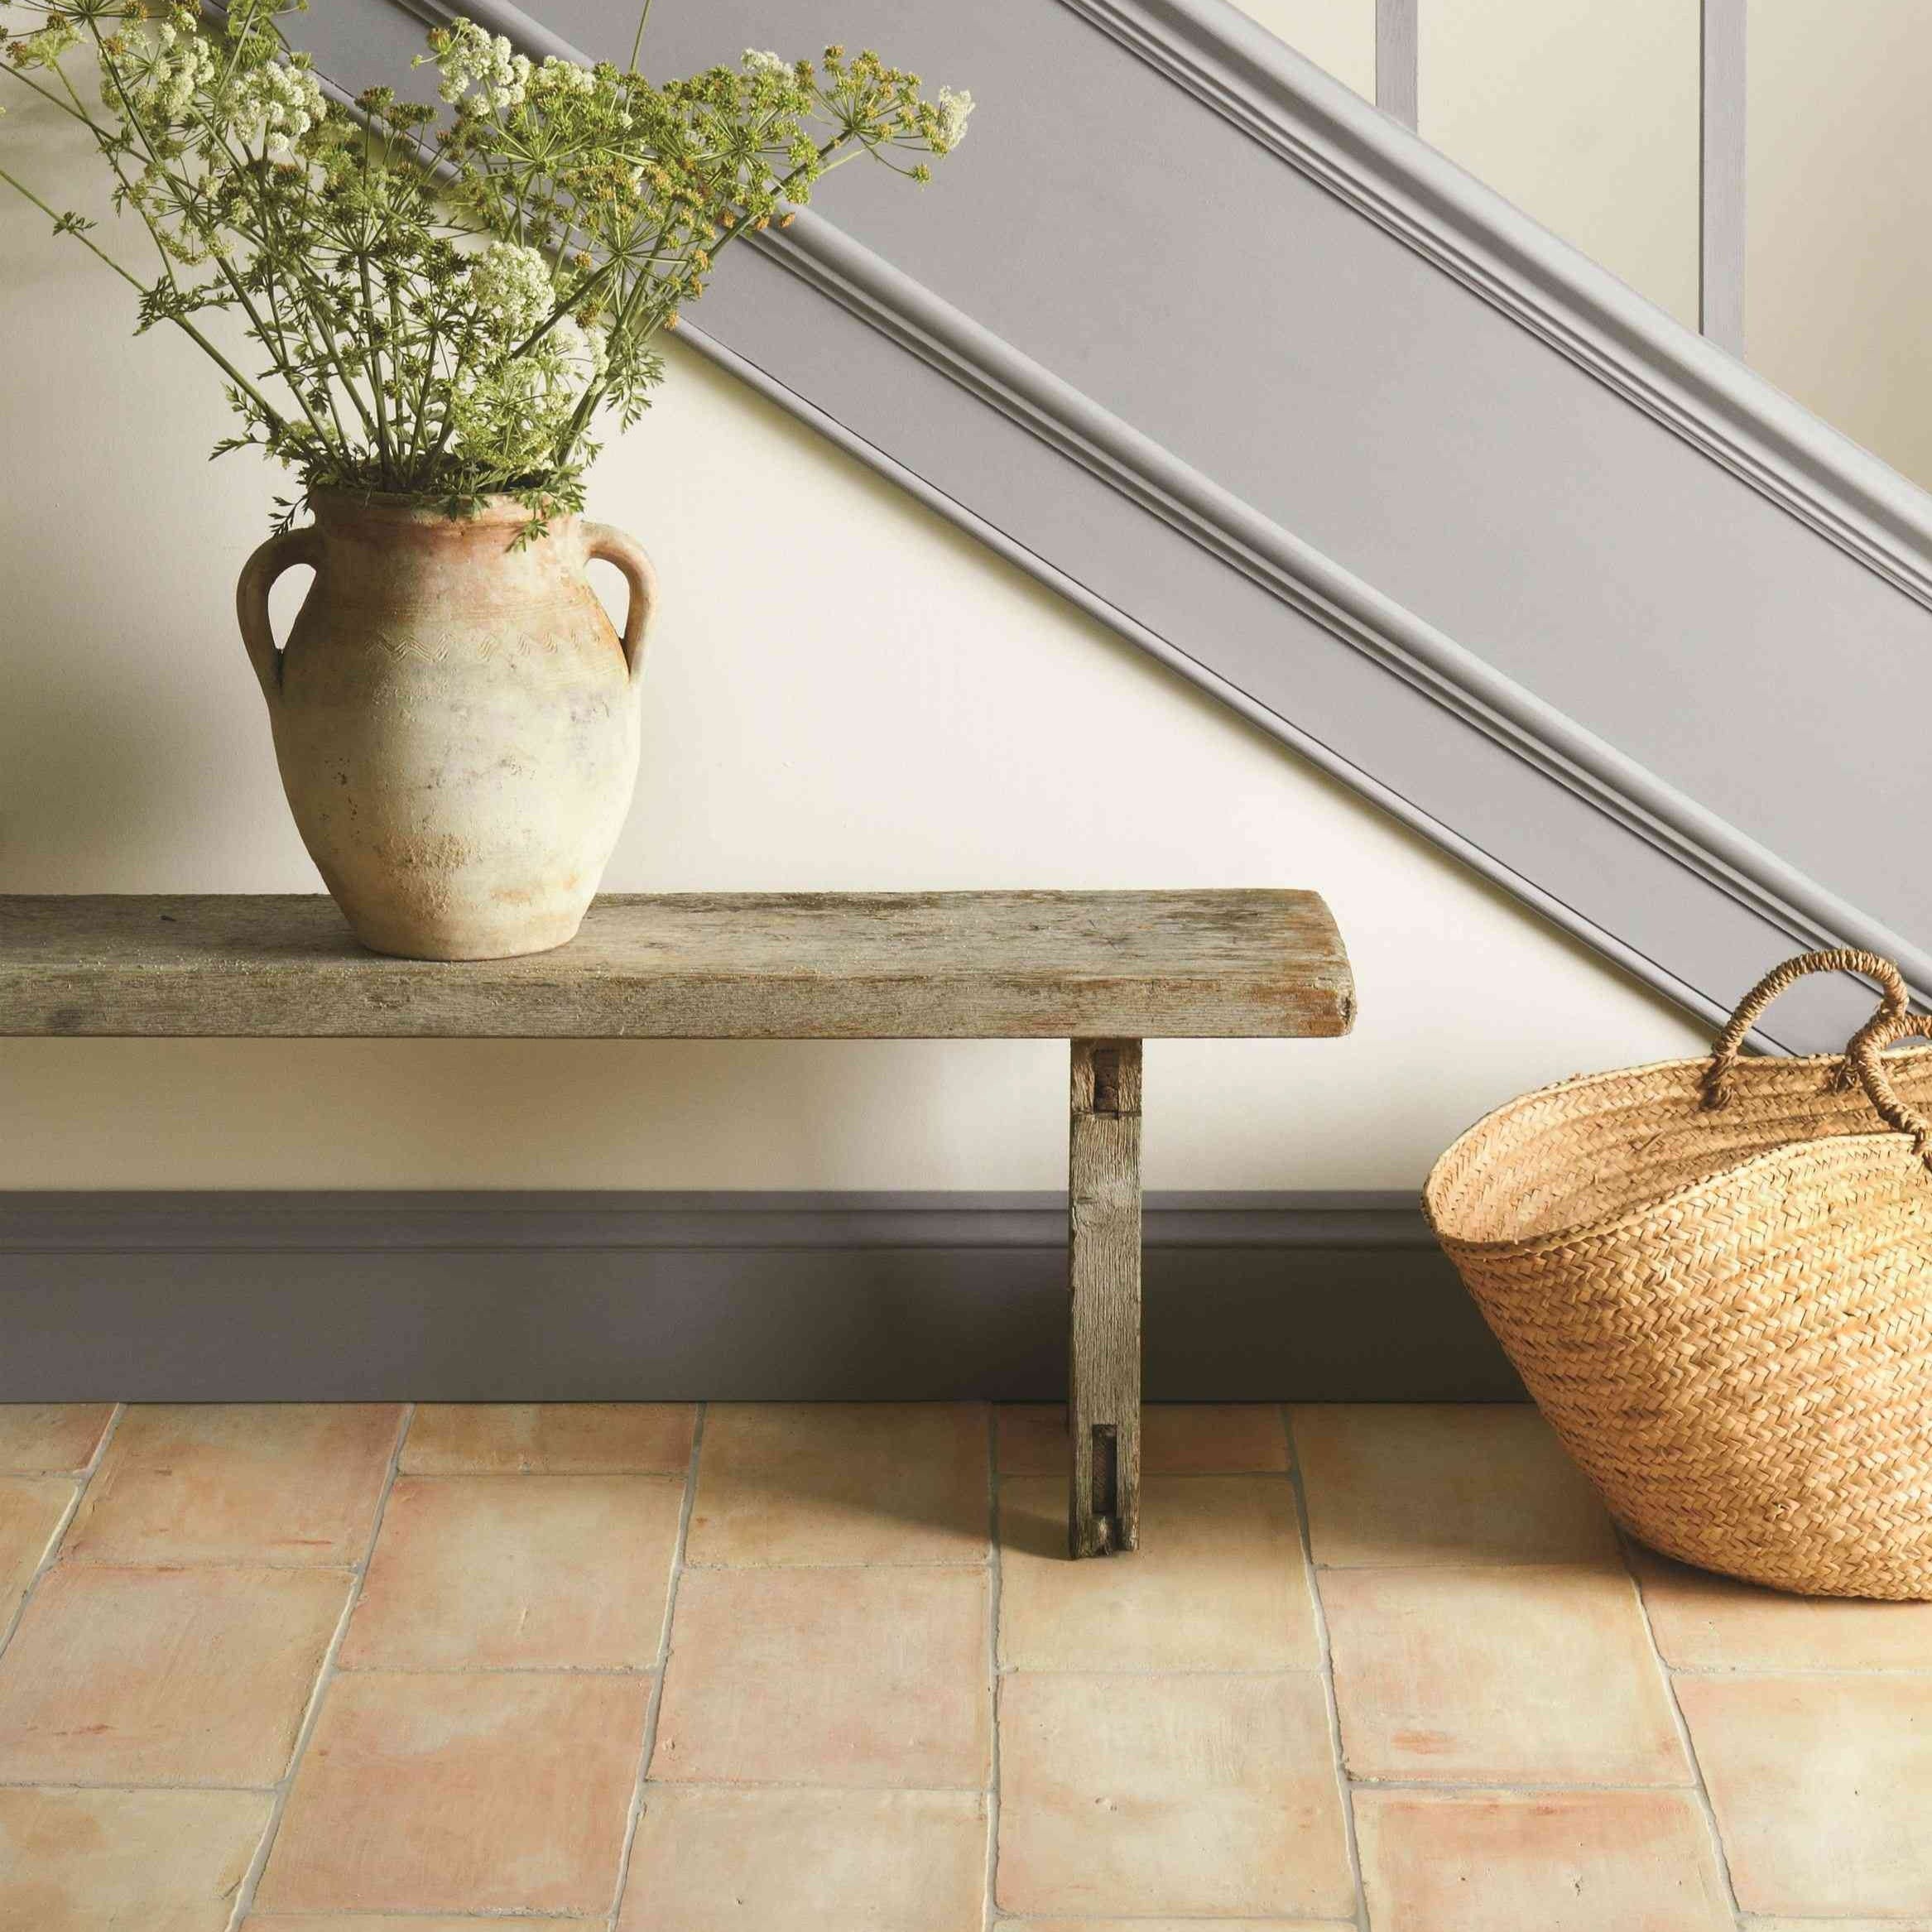 Original Style Earthworks Handmade Terracotta Floor Tile 40x40cm